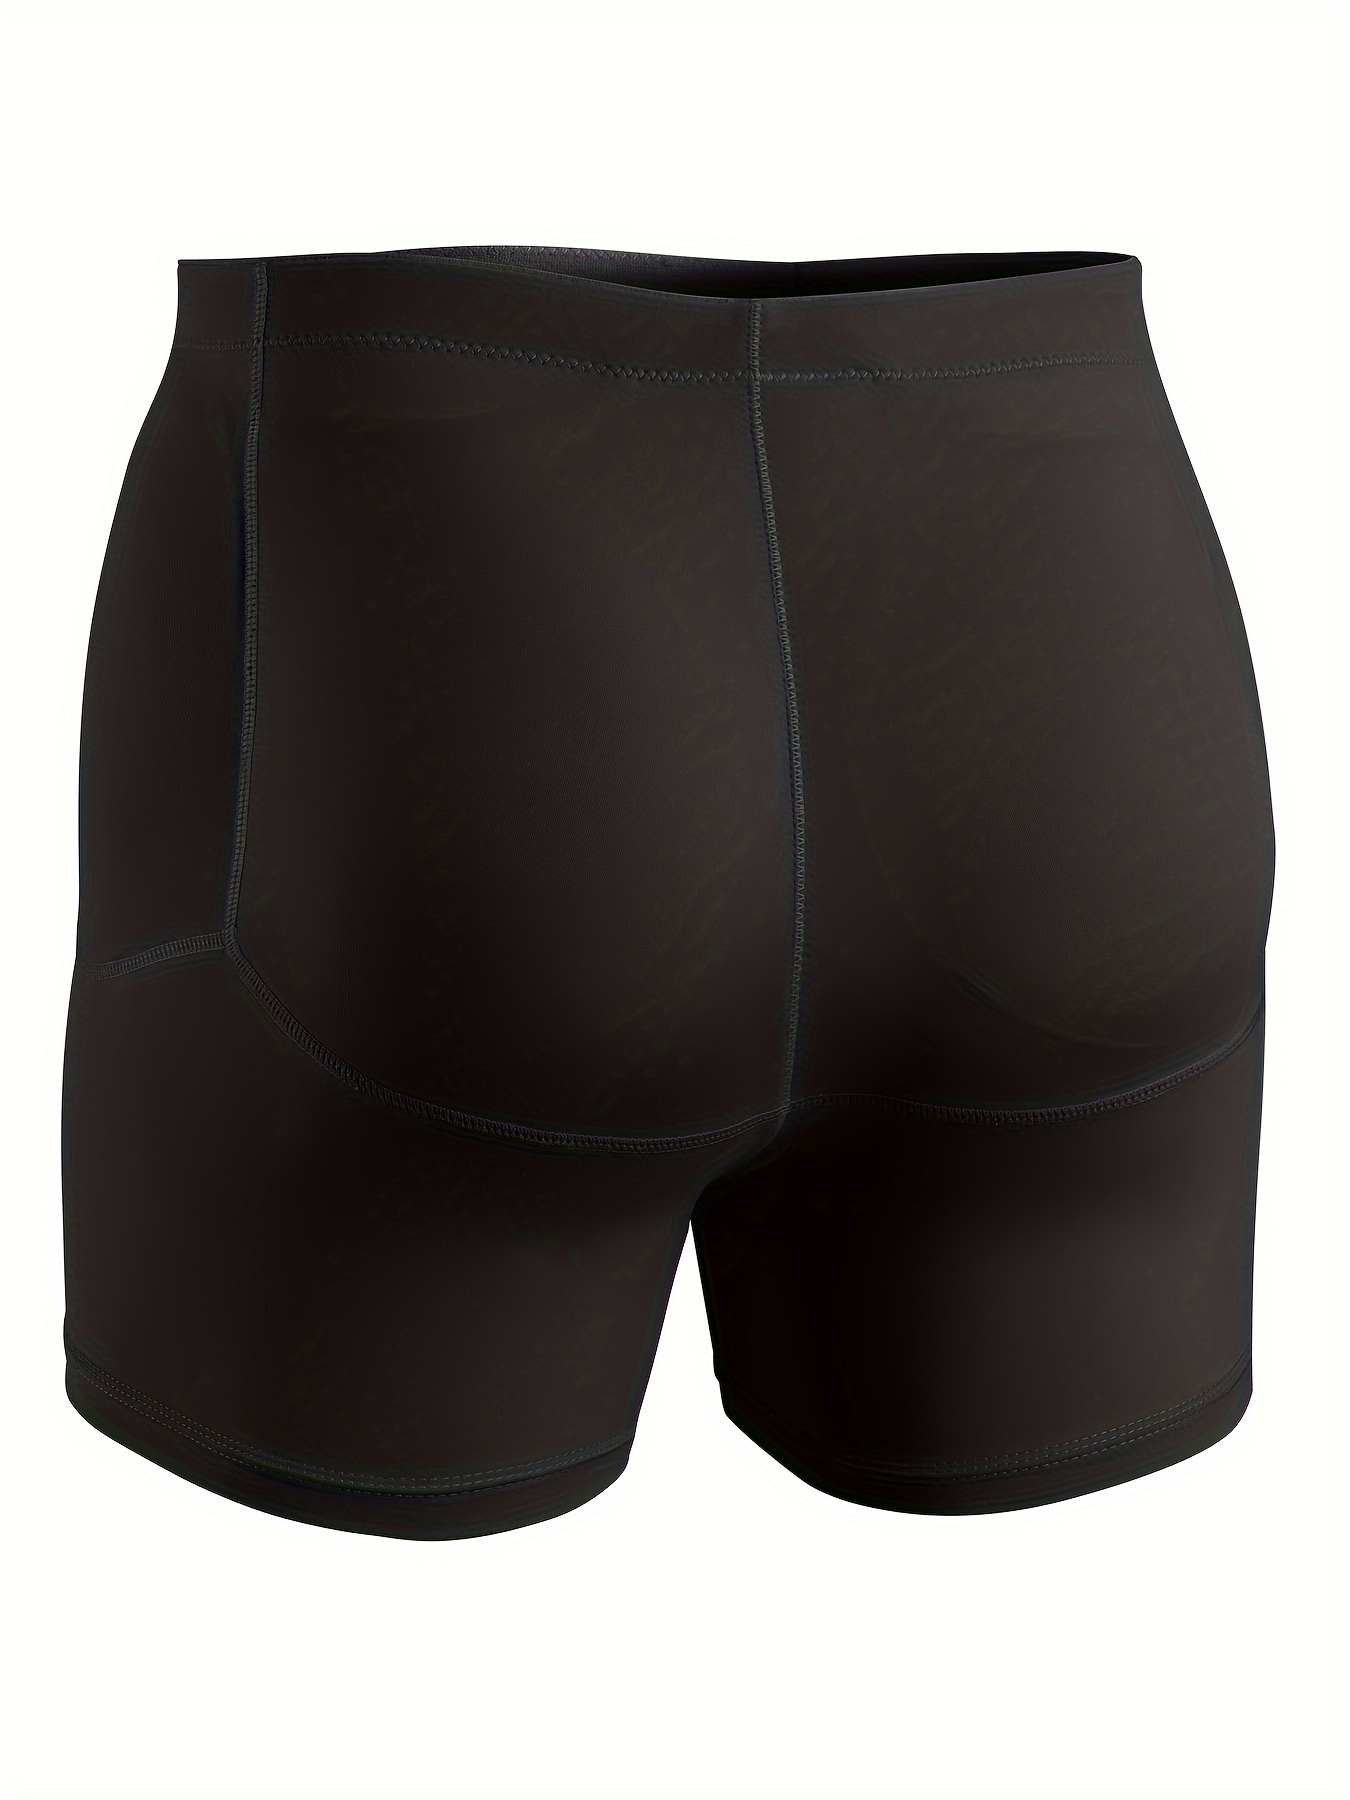 Men's Boxers, Men's Tummy Control Boxer Shorts with Hip Design